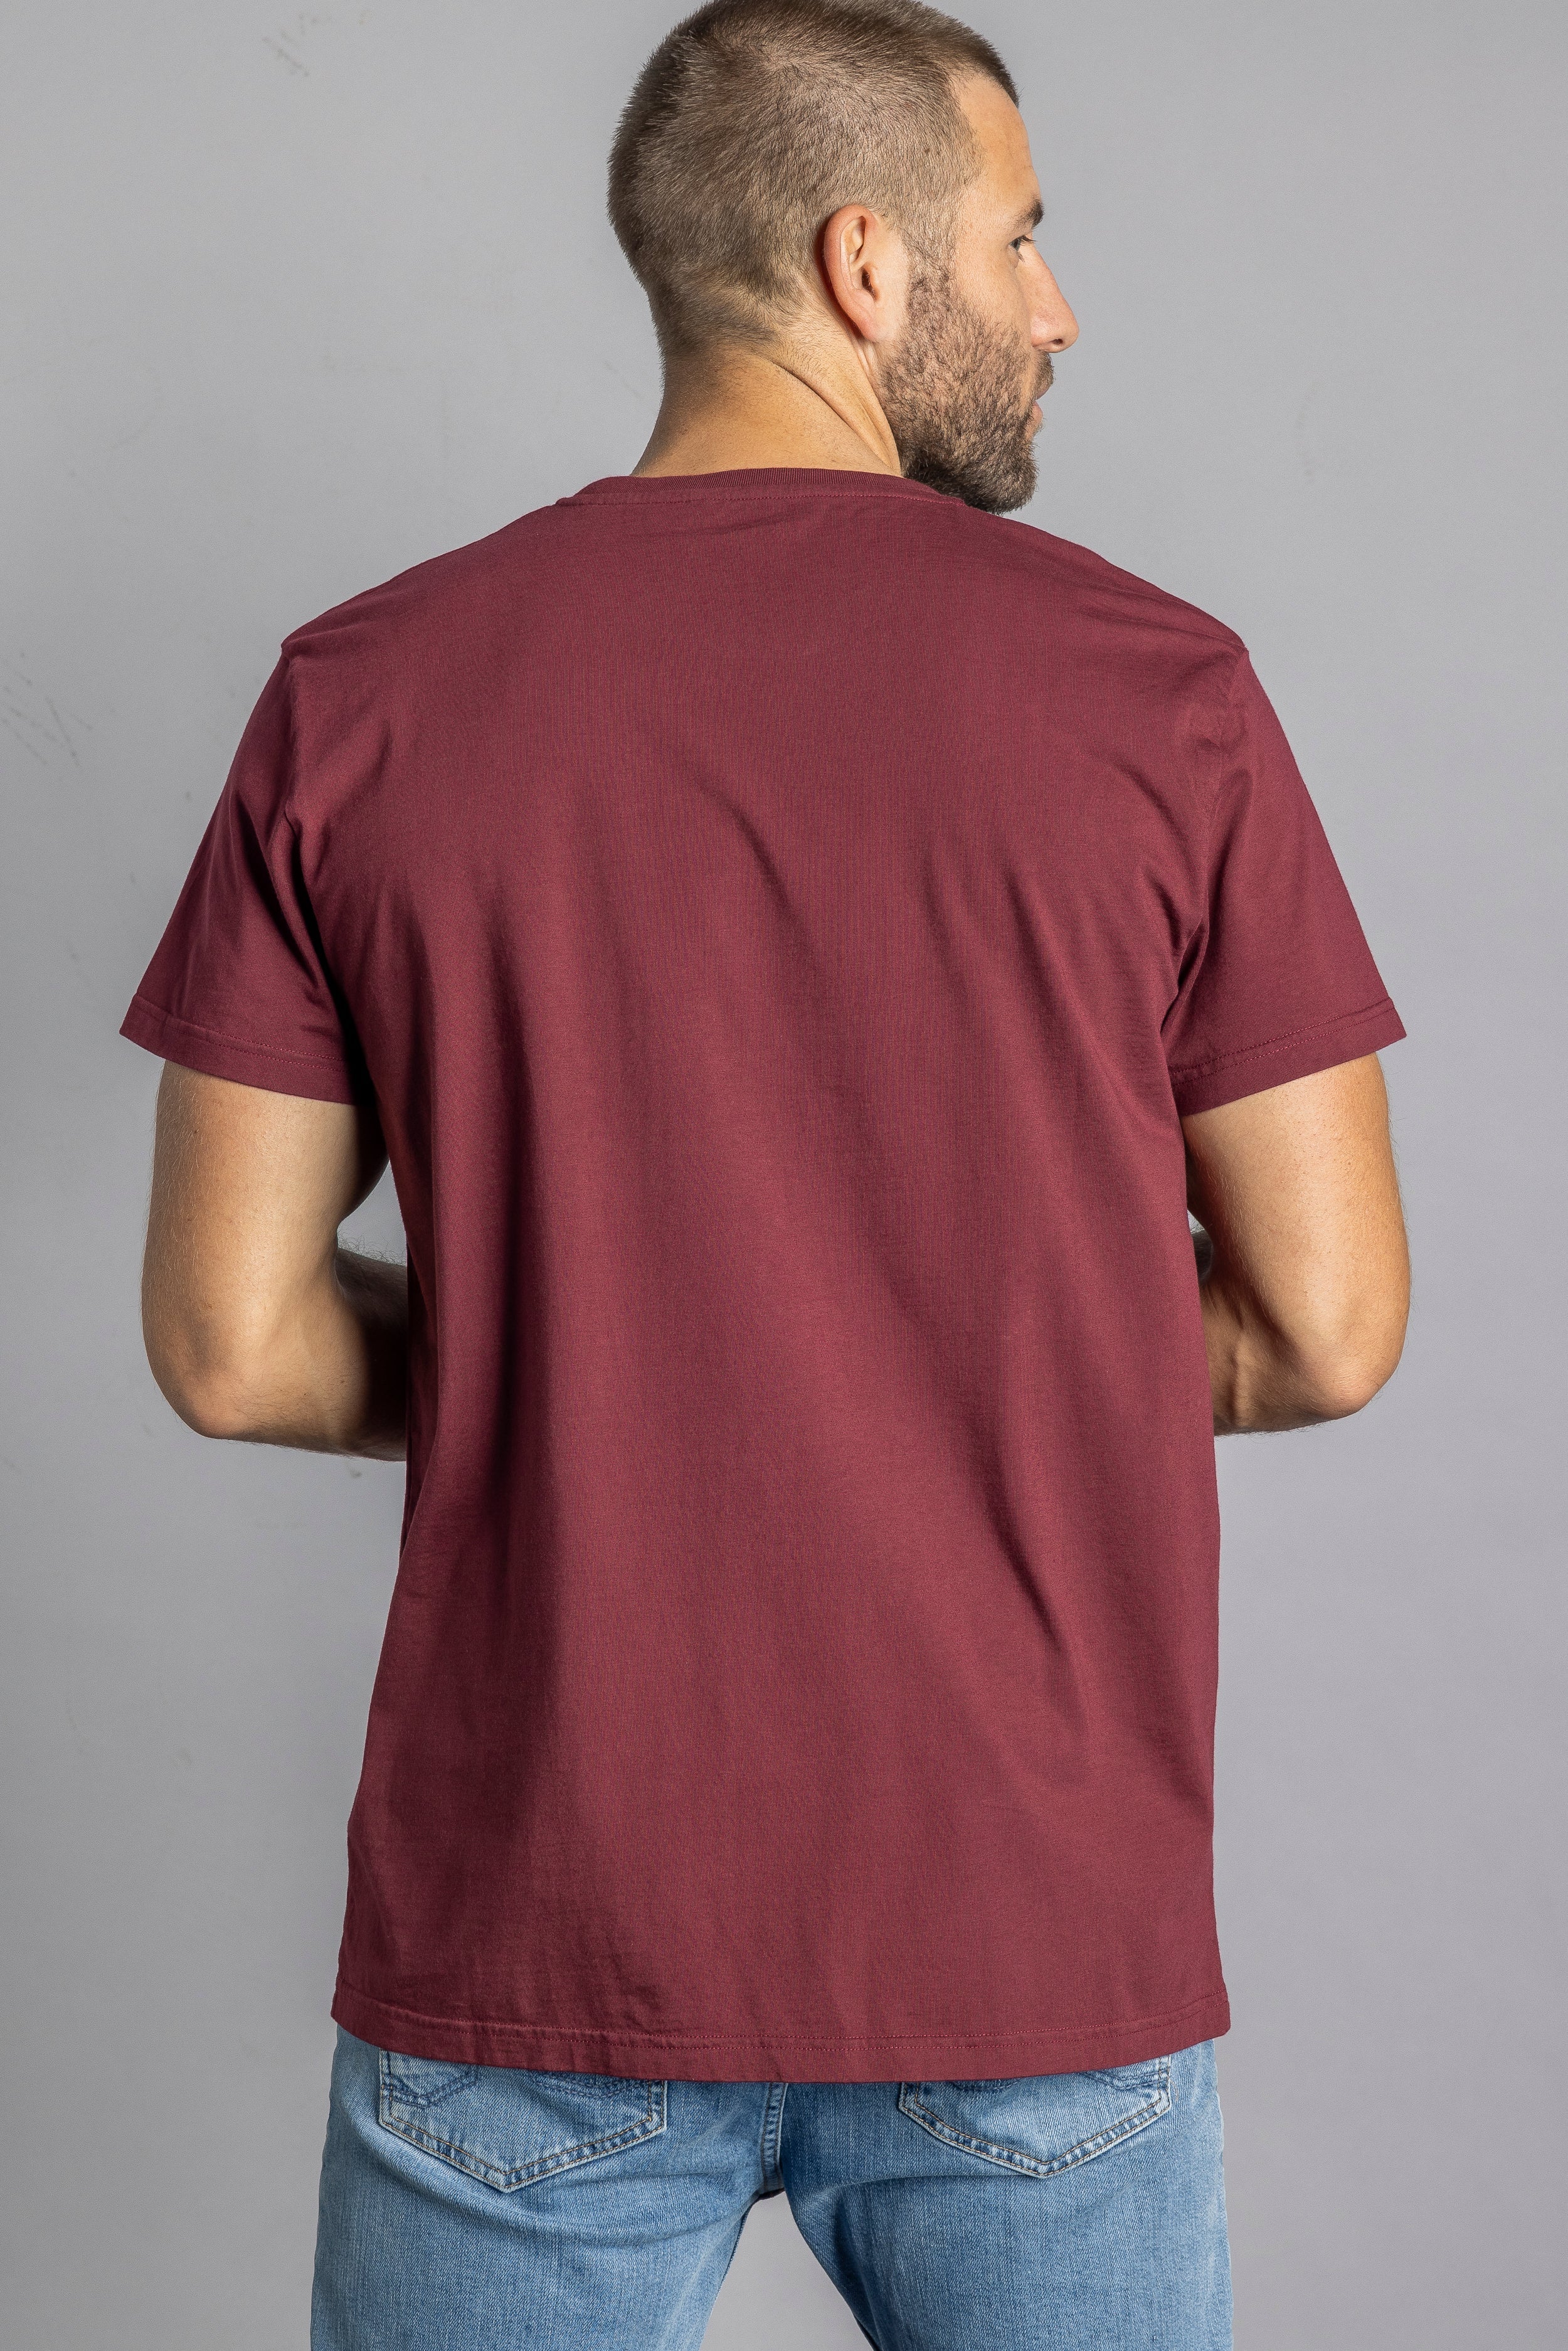 T-shirt rouge foncé Premium Blank Standard en coton 100% biologique de DIRTS